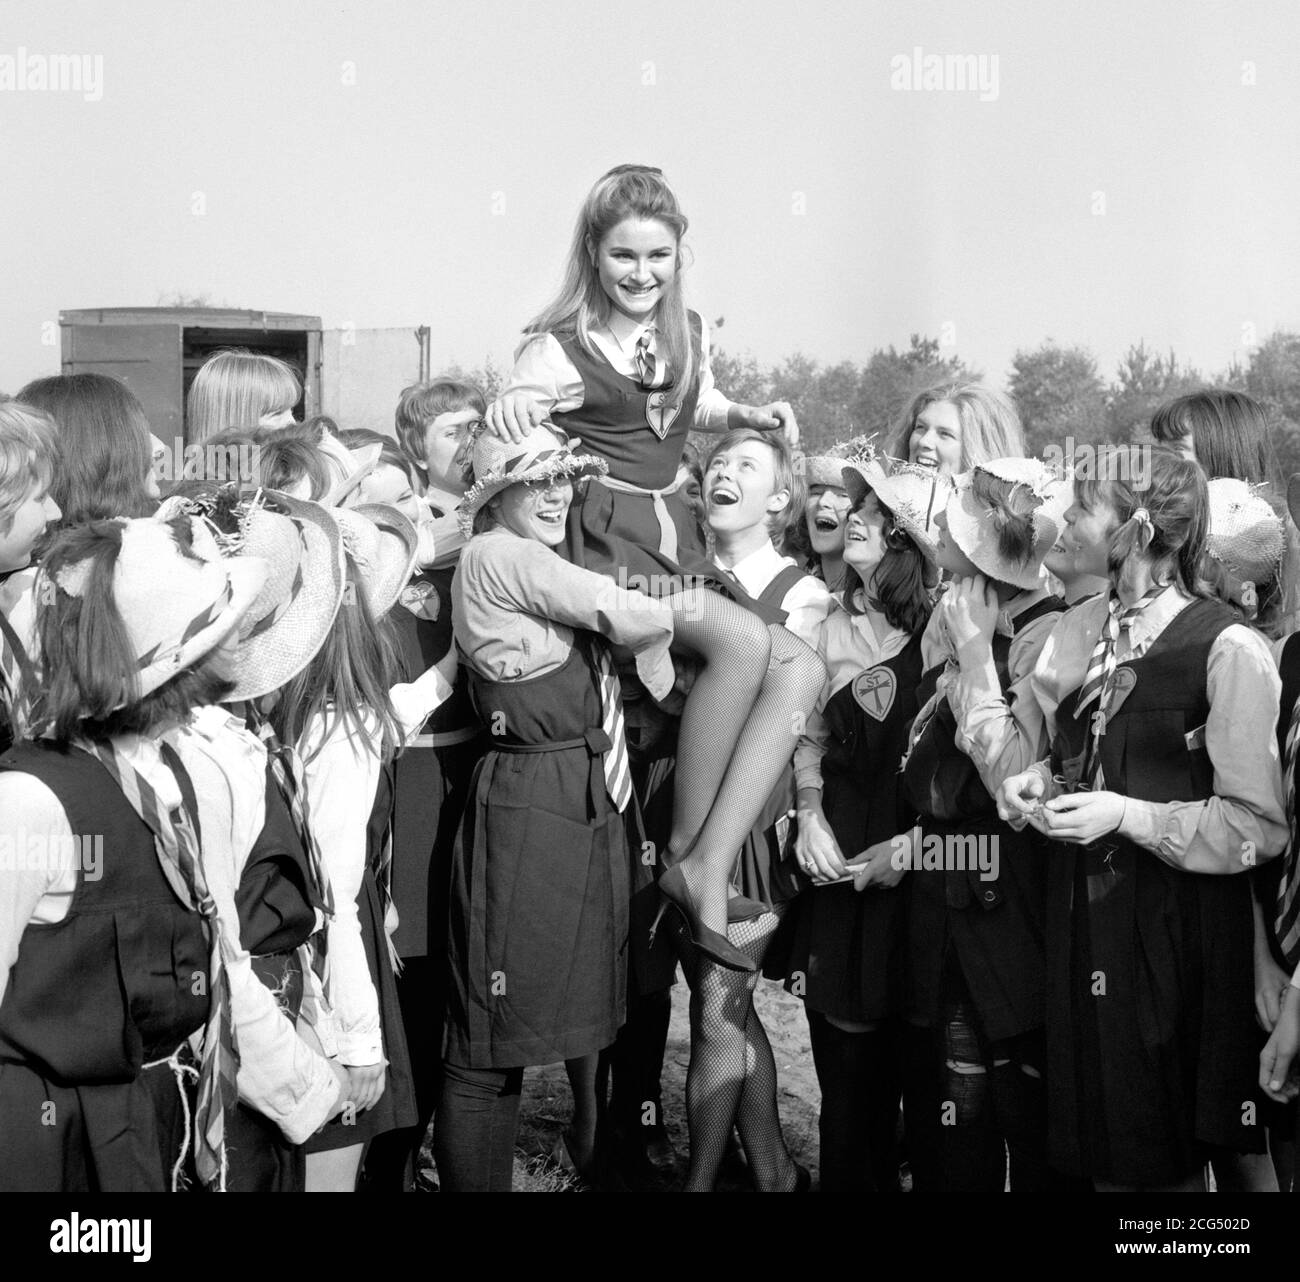 Portland Mason, Tochter des Filmschauspielers James Mason, während Drehorte im Longmoor Army Camp, Hampshire, für "The Great St Trinian's Train Robbery", basierend auf der schrecklichen Mädchenschule, die in den Büchern des renommierten Karikaturisten Ronald Searle entstanden ist. Stockfoto